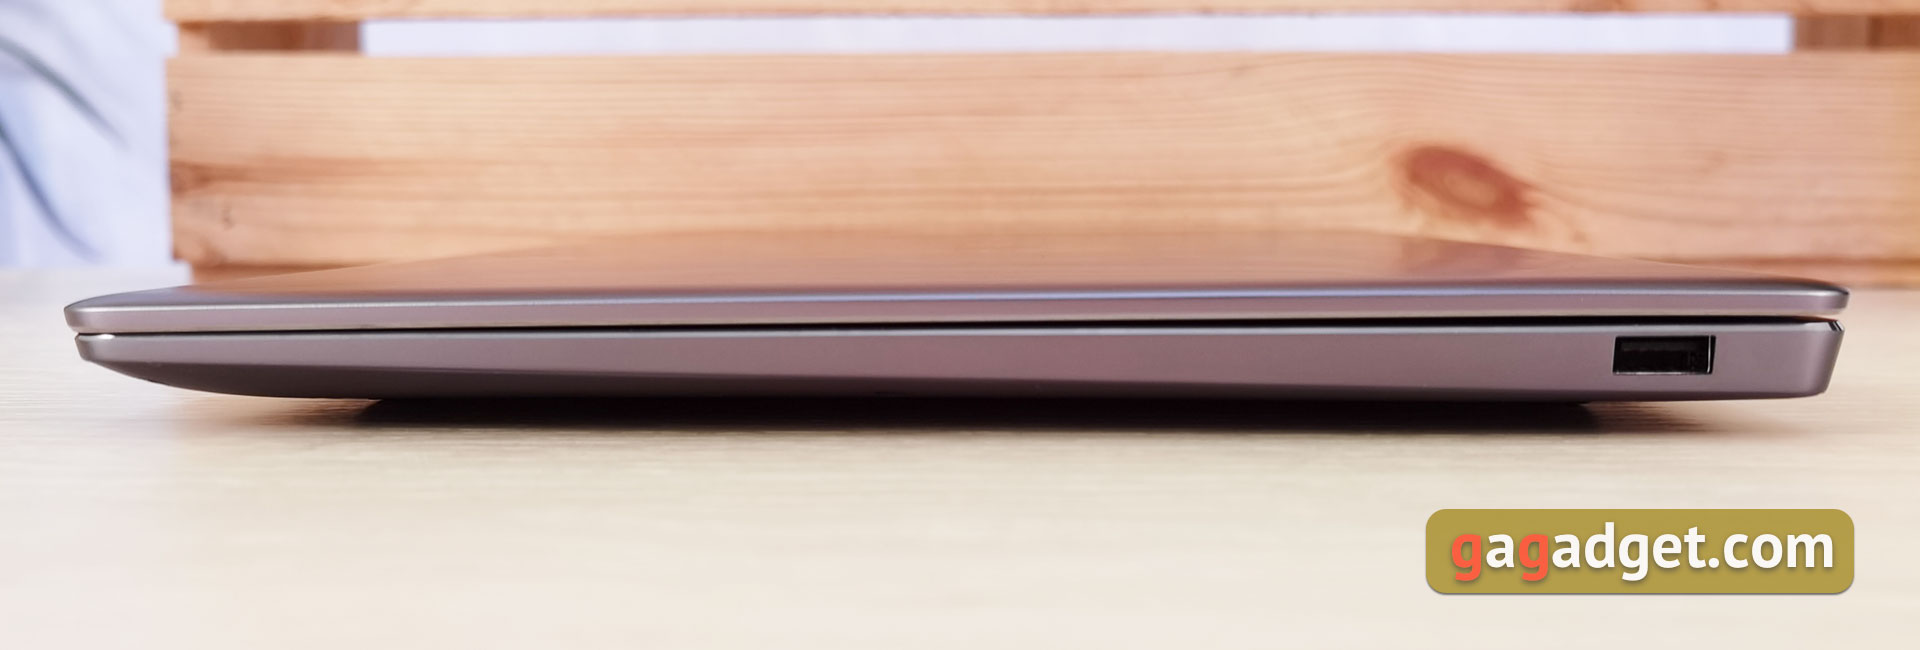 Test du Huawei MateBook 14s : ordinateur portable Huawei avec services Google et écran rapide-6